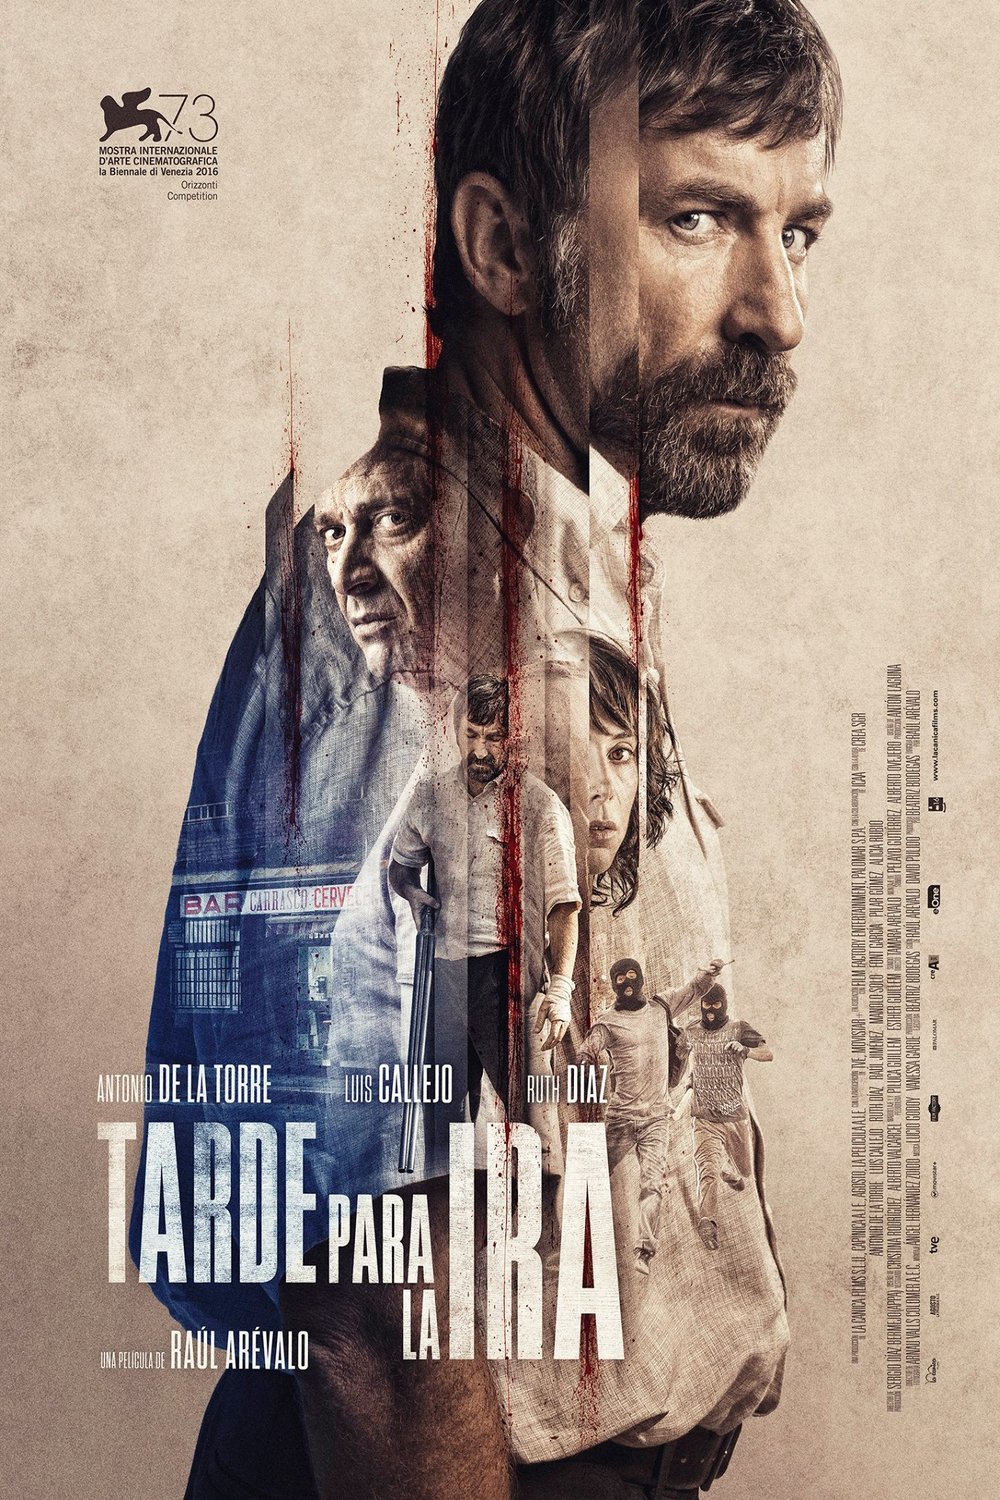 Spanish poster of the movie Tarde para la ira